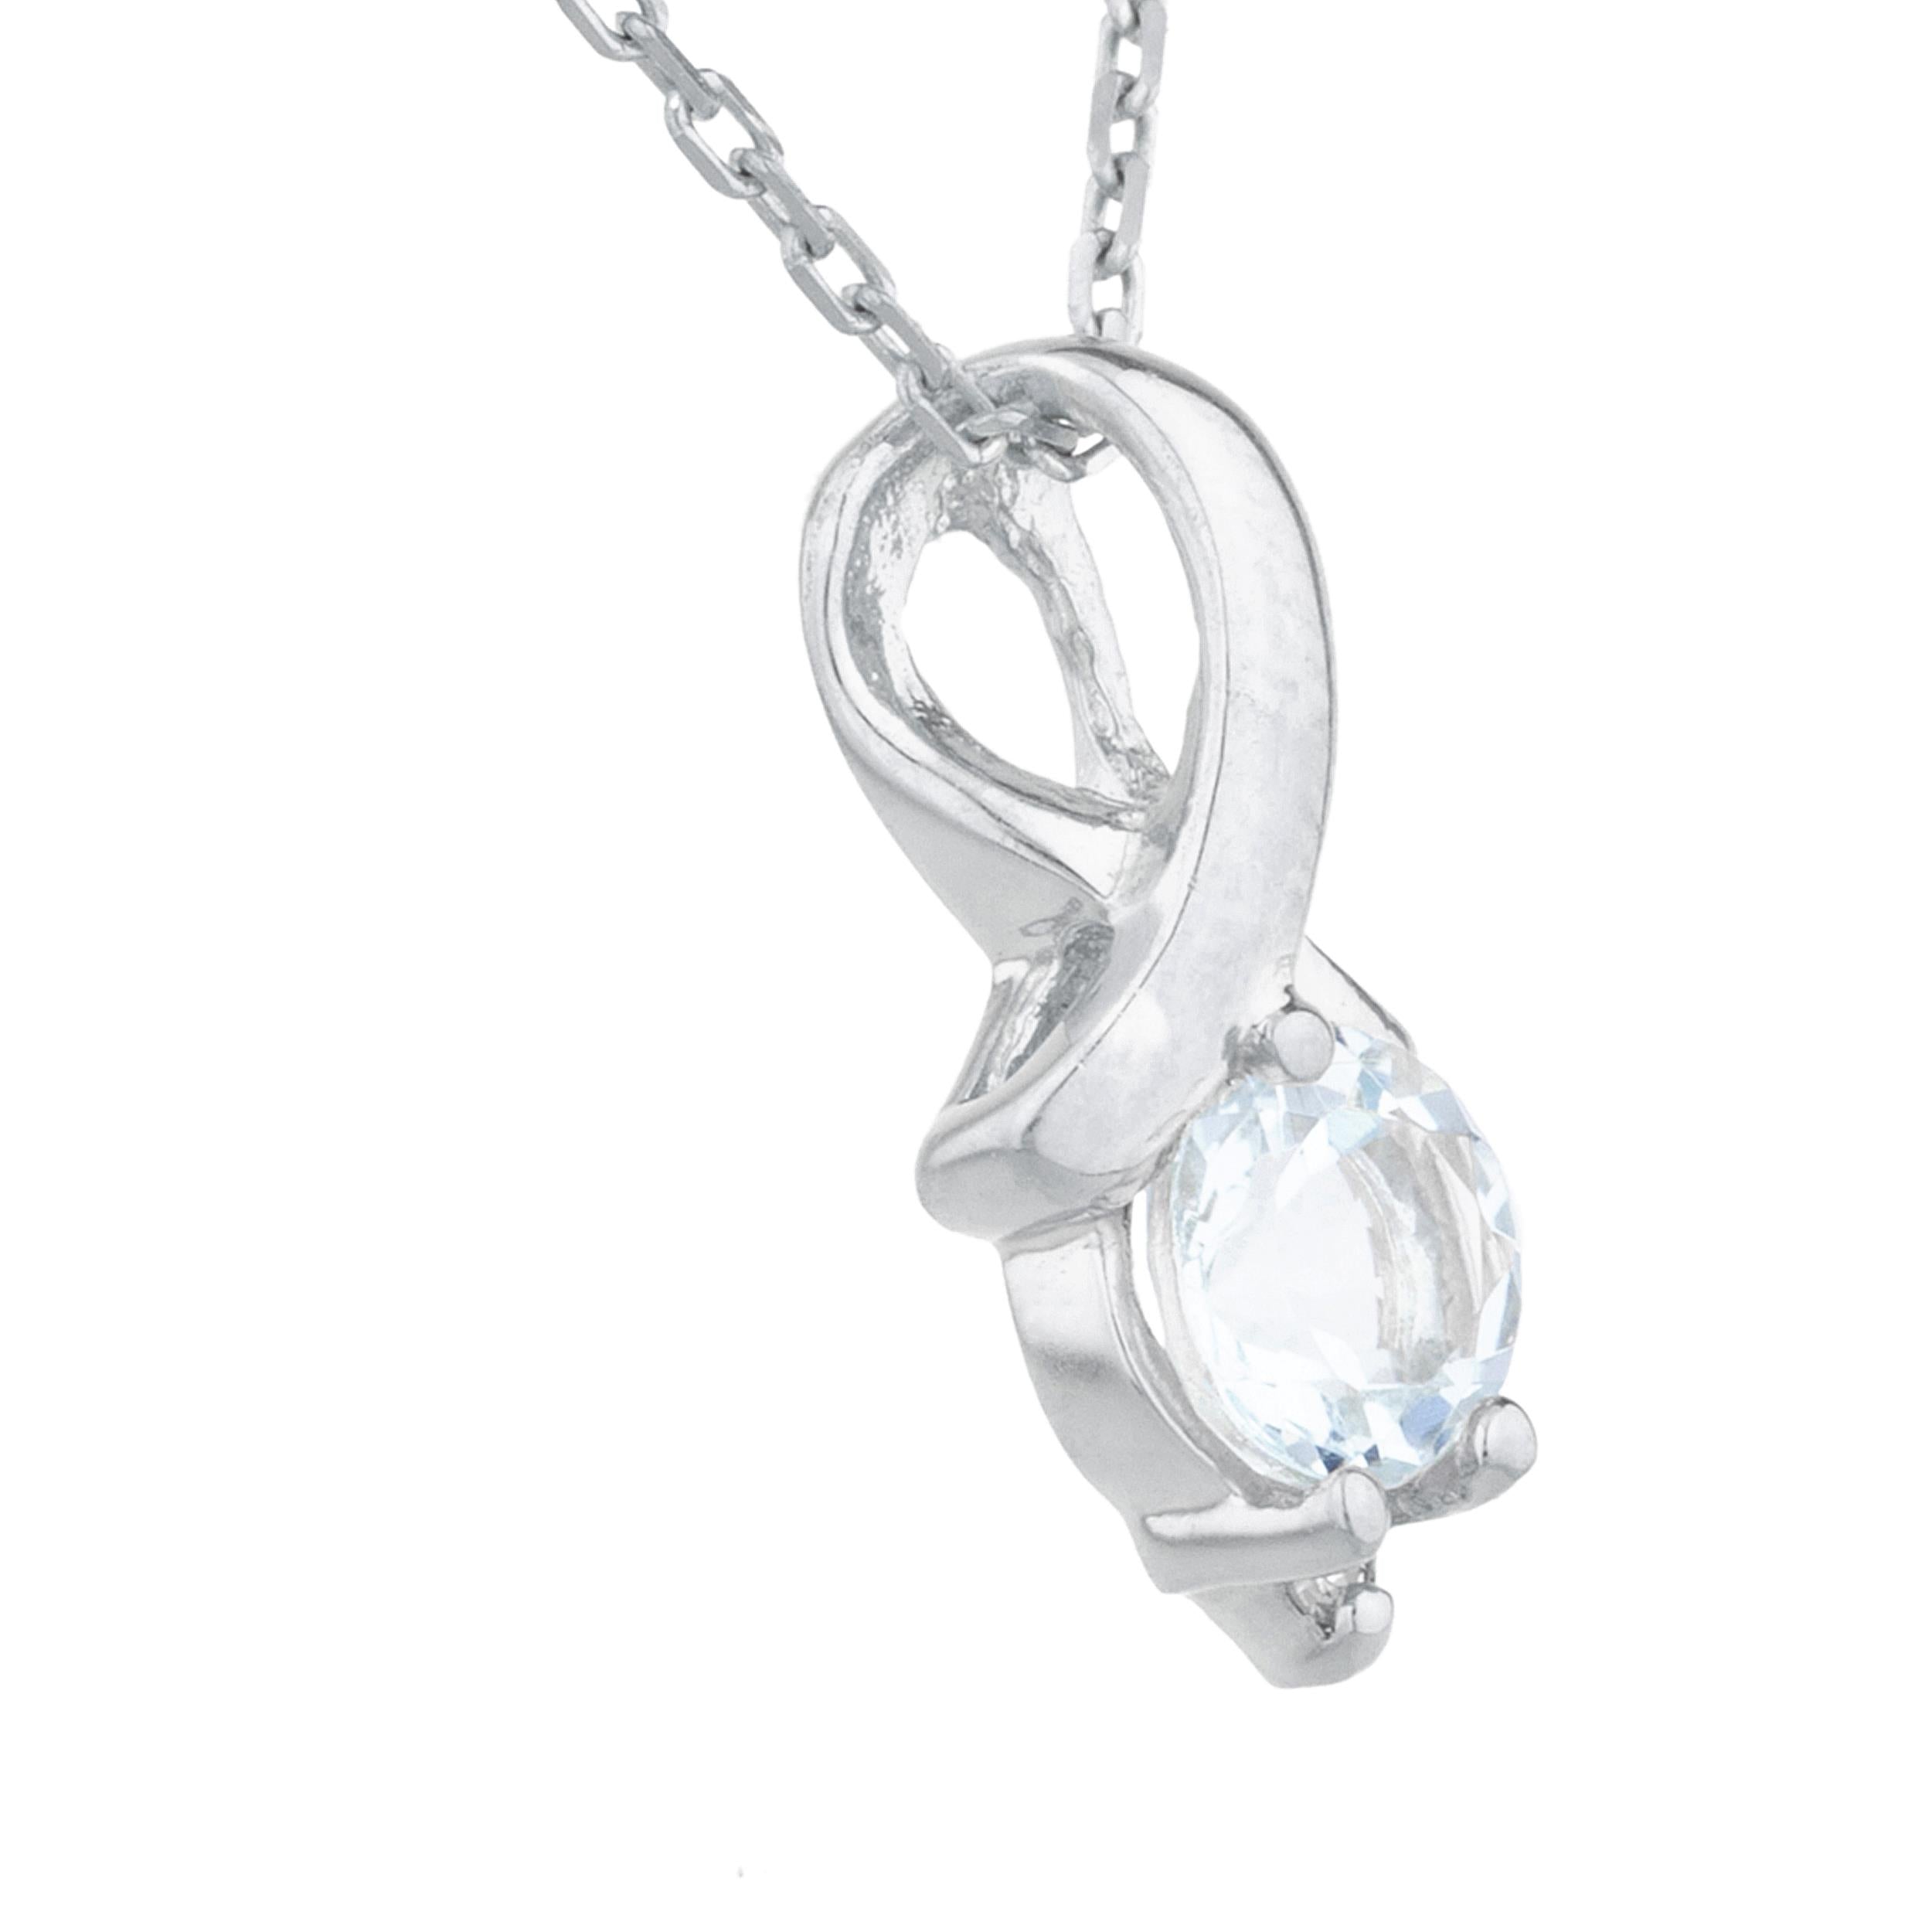 14Kt Gold Genuine Aquamarine & Diamond Round Design Pendant Necklace